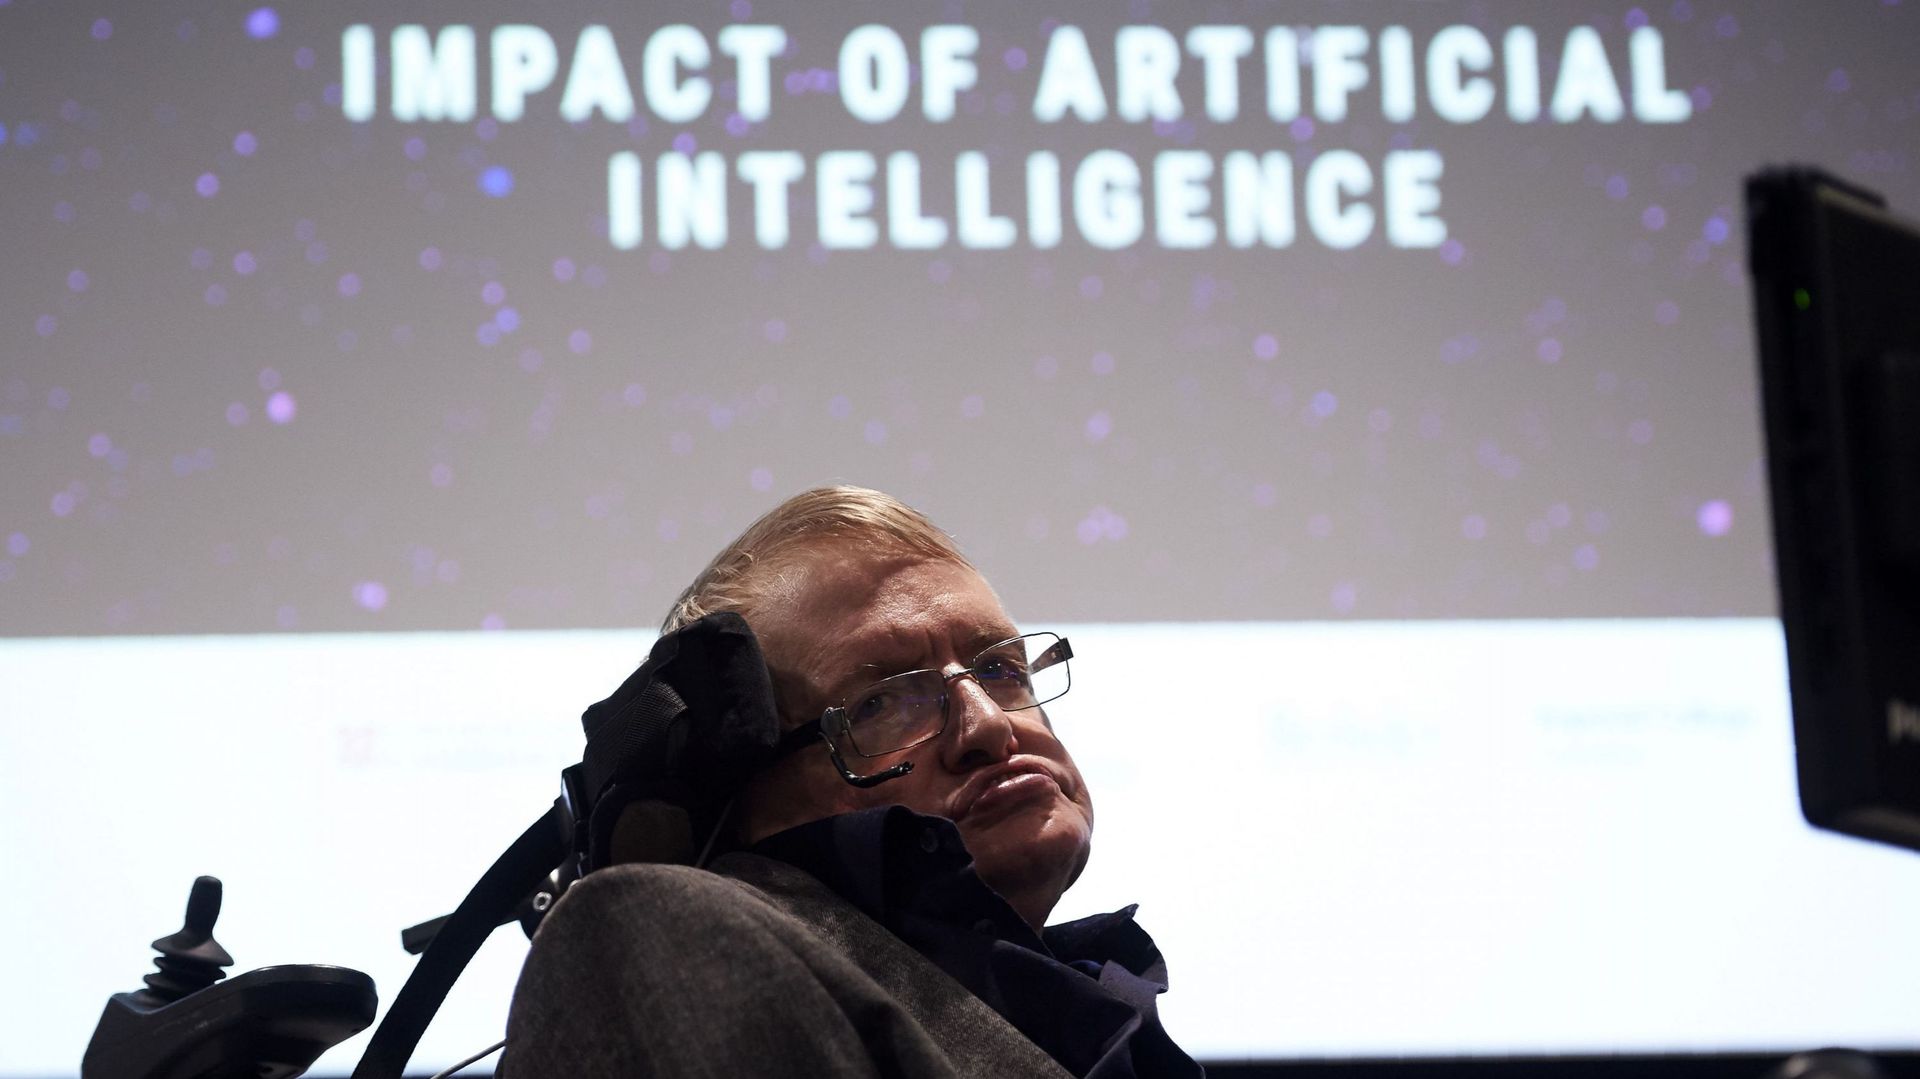 Pour l’astrophysicien Stephen Hawking, le développement d’une intelligence artificielle 'complète' pourrait signifier la fin de l’espèce humaine. 